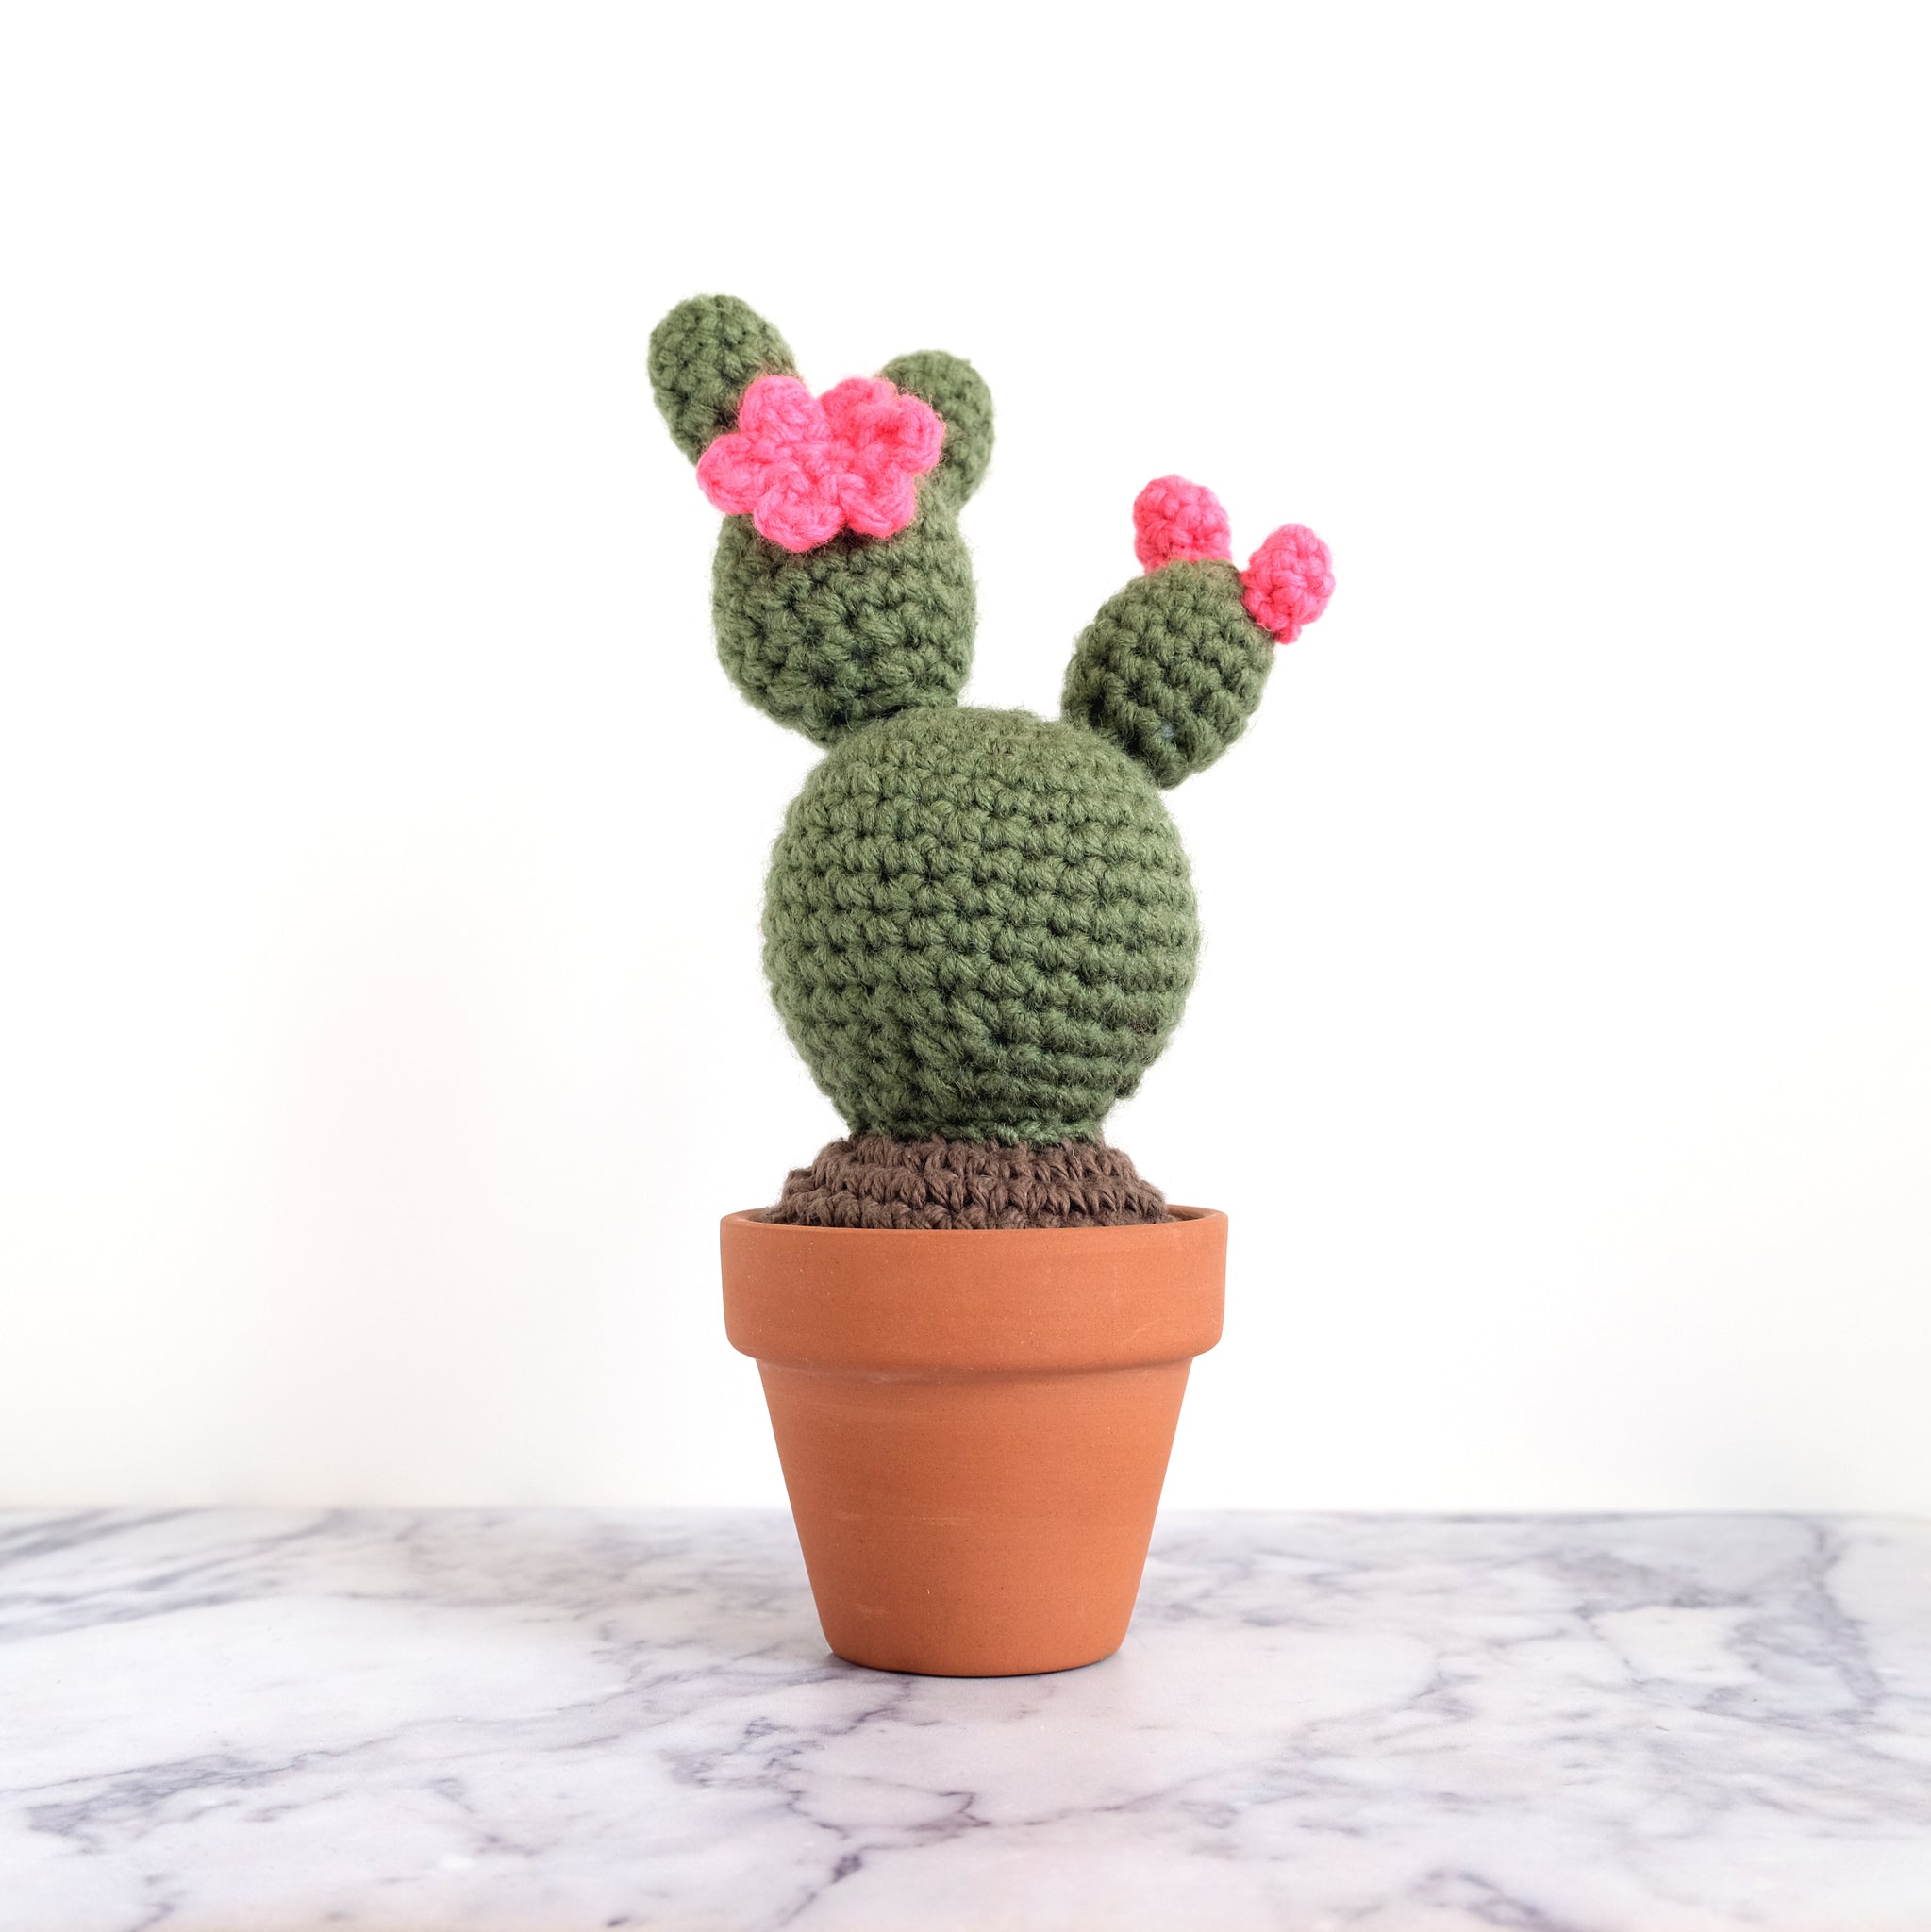 Crochet Cactus - Brigitta